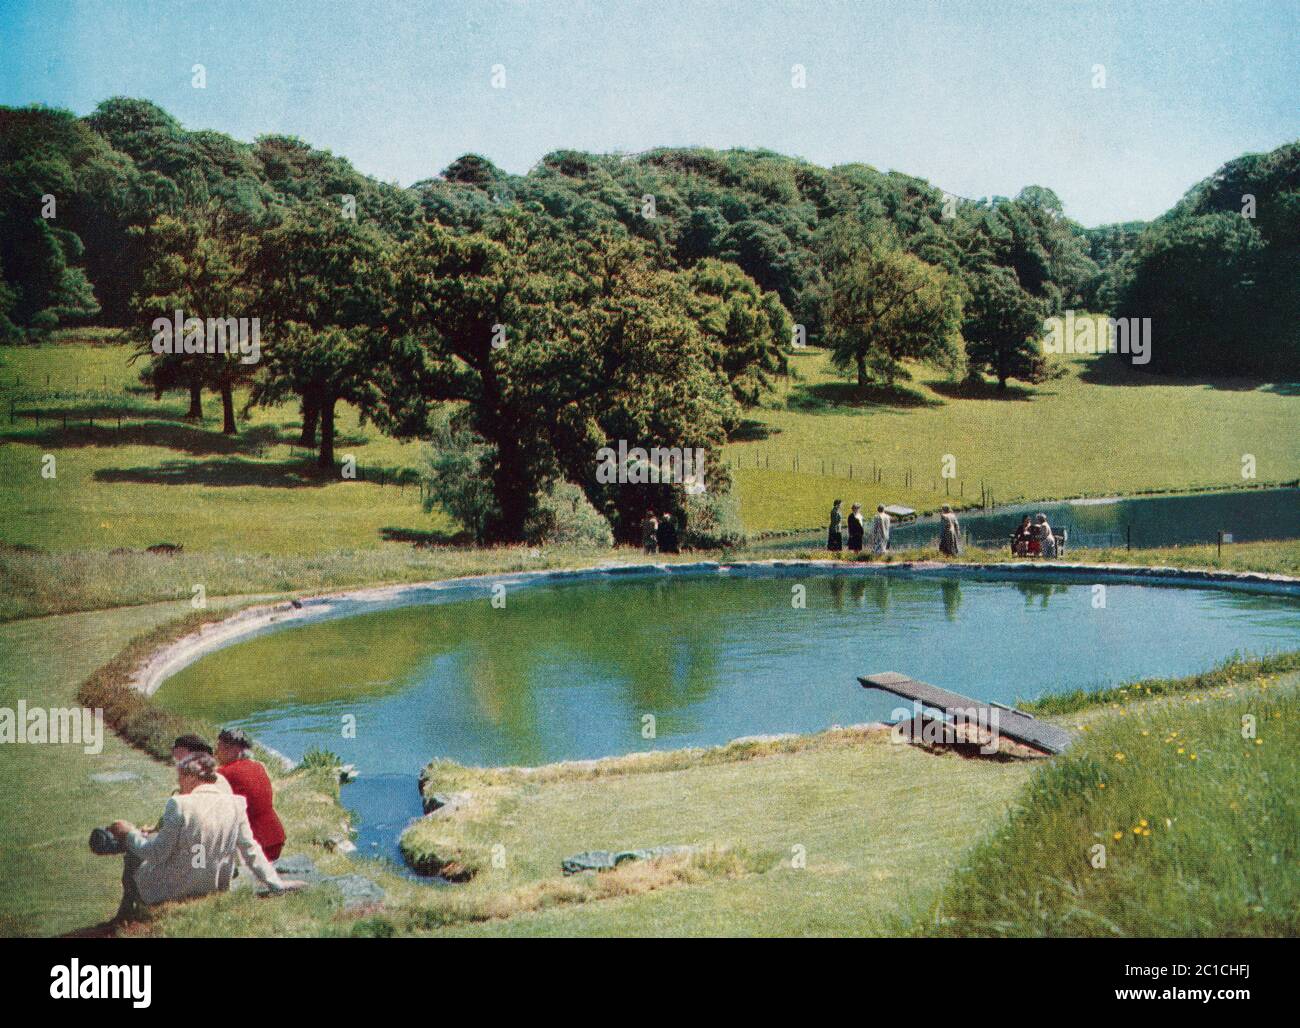 La piscine en plein air de Chartwell, près de Westerham, Kent, Angleterre. La maison de campagne de Sir Winston et de Lady Churchill. Sir Winston Leonard Spencer-Churchill, 1874 – 1965. Politicien britannique, officier de l'armée, écrivain et deux fois Premier ministre du Royaume-Uni. Banque D'Images